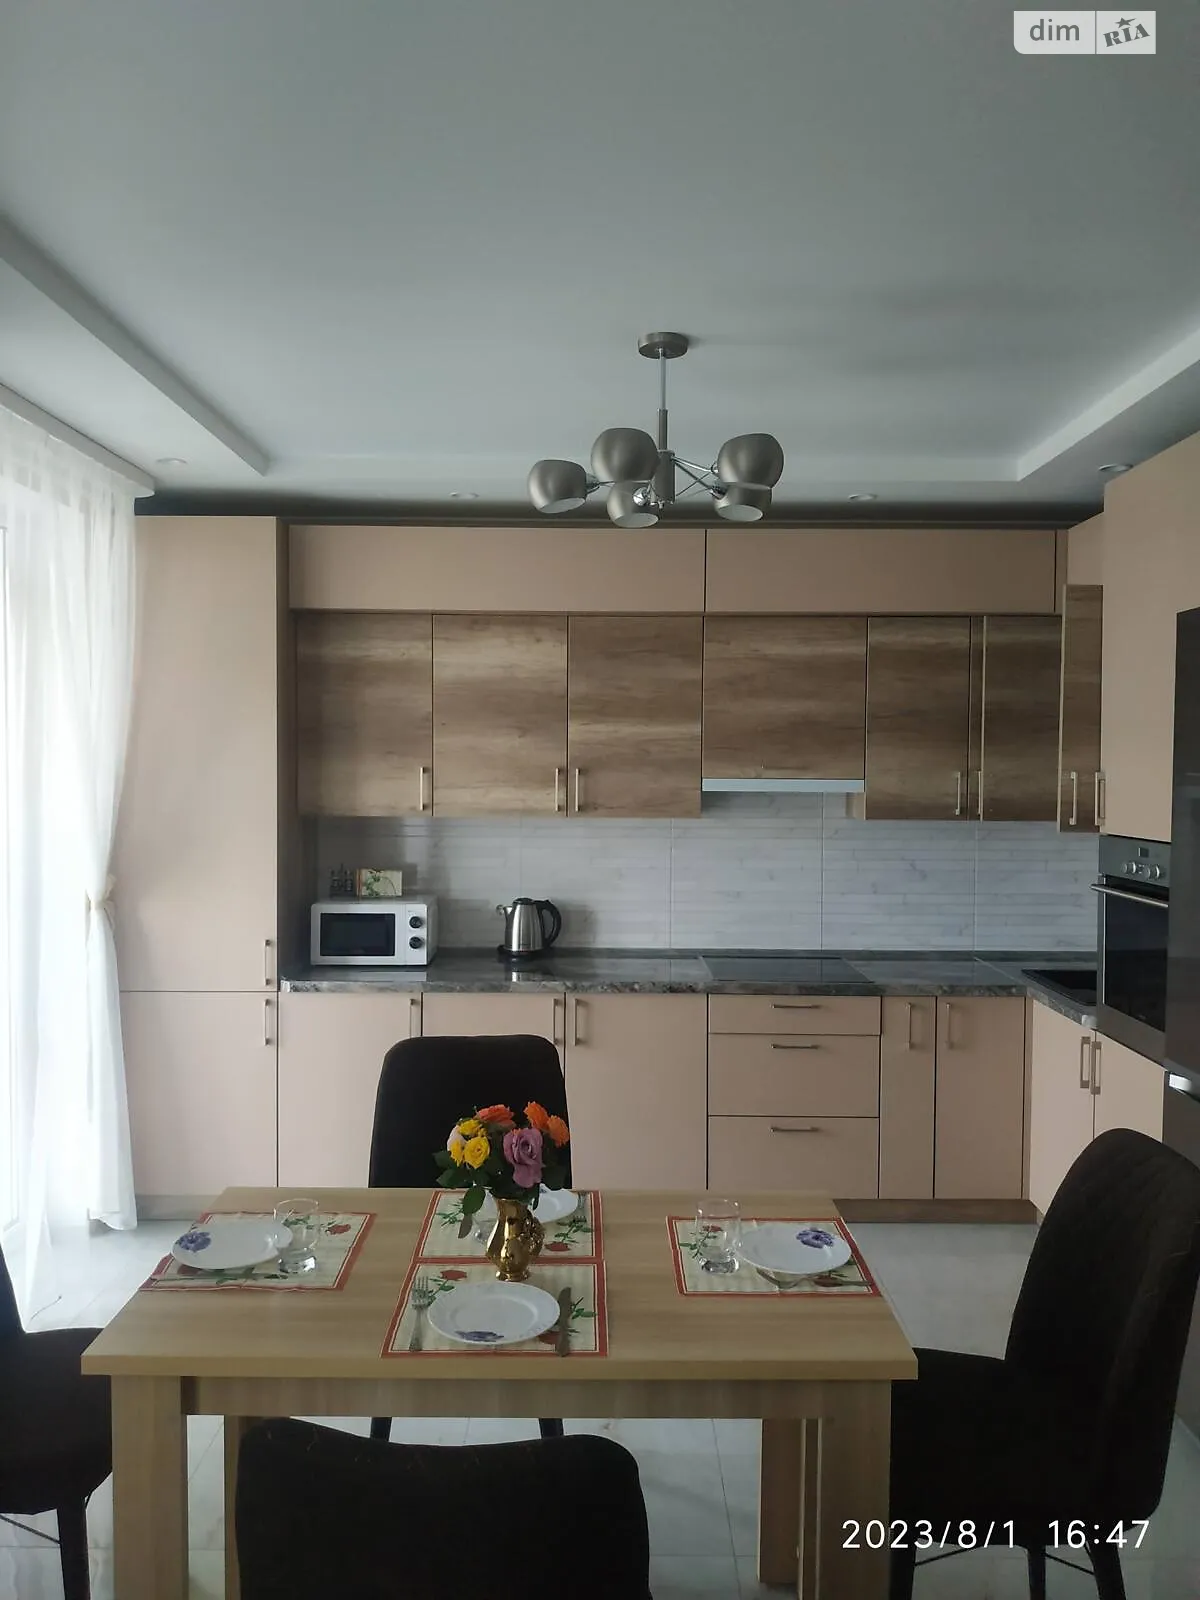 2-кімнатна квартира у Луцьку, цена: 900 грн